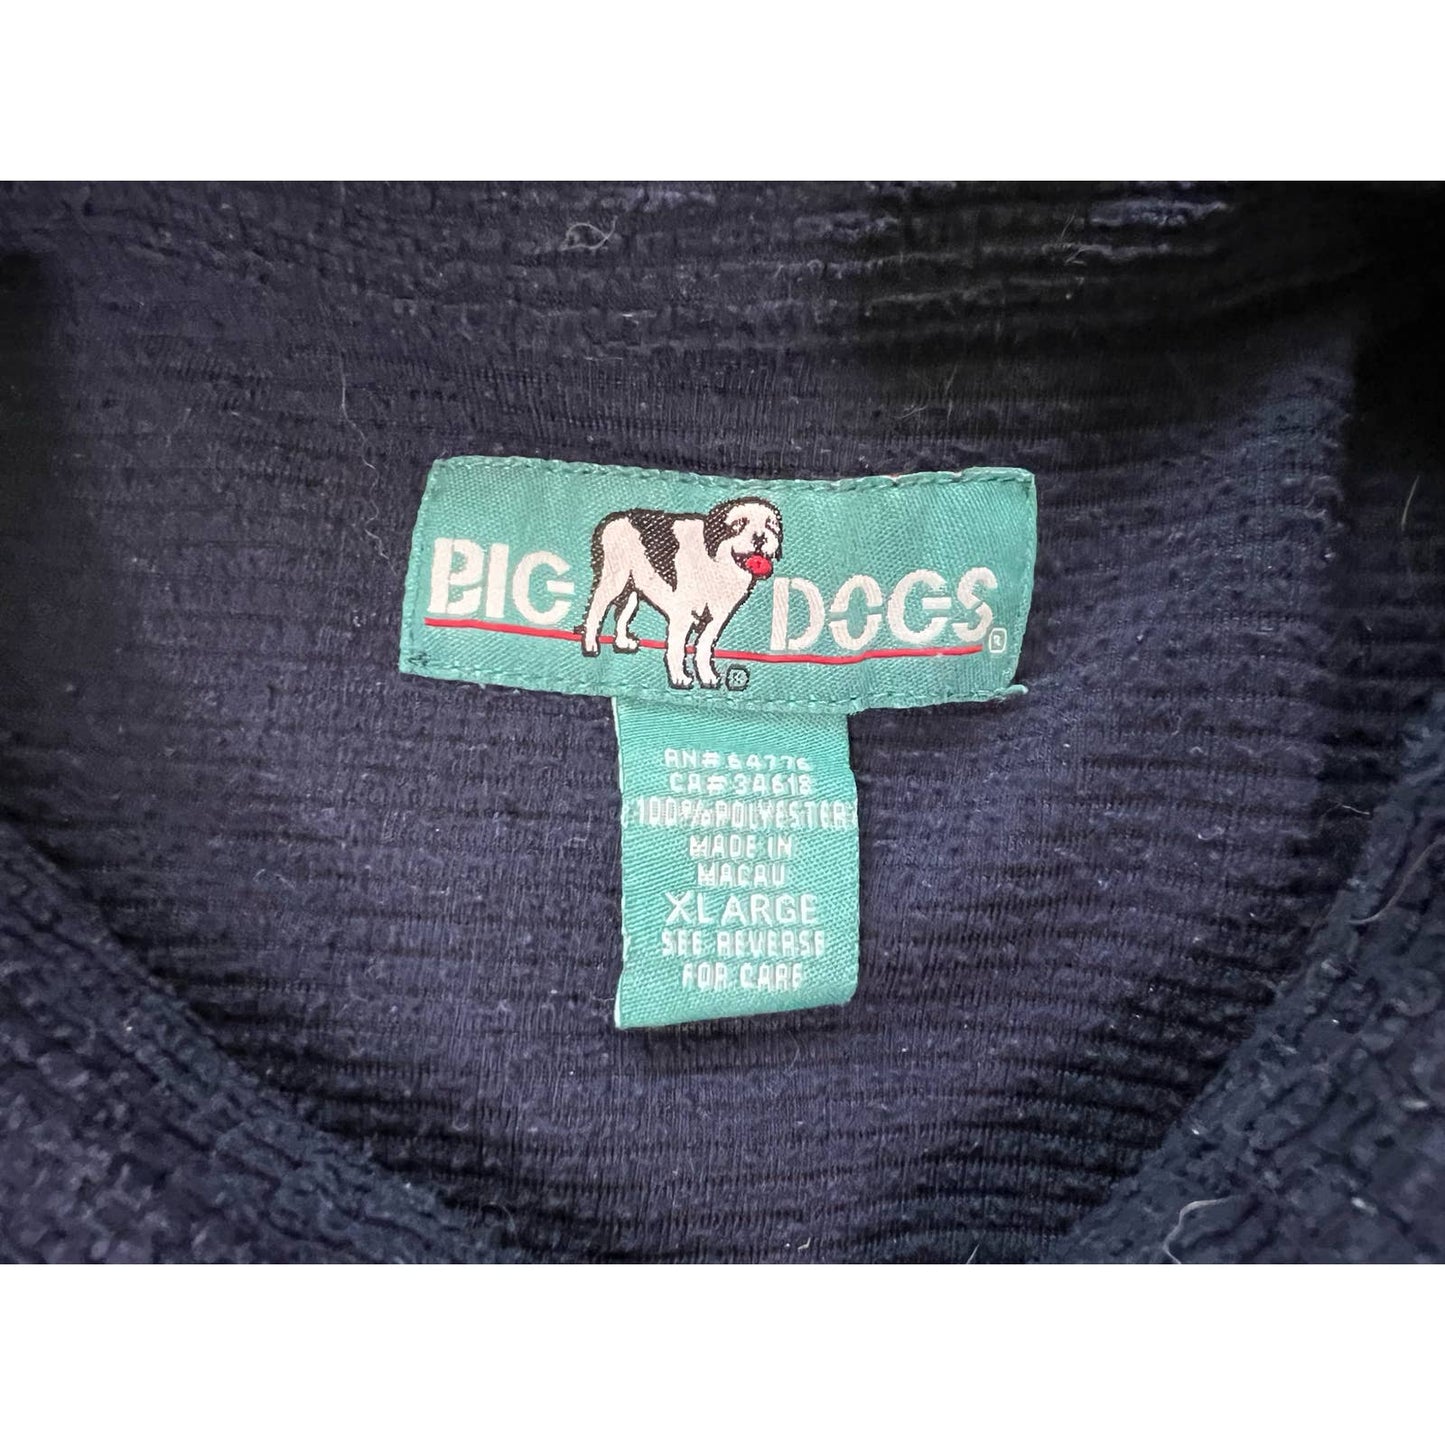 Big Dogs Textured Button Up Shirt XL